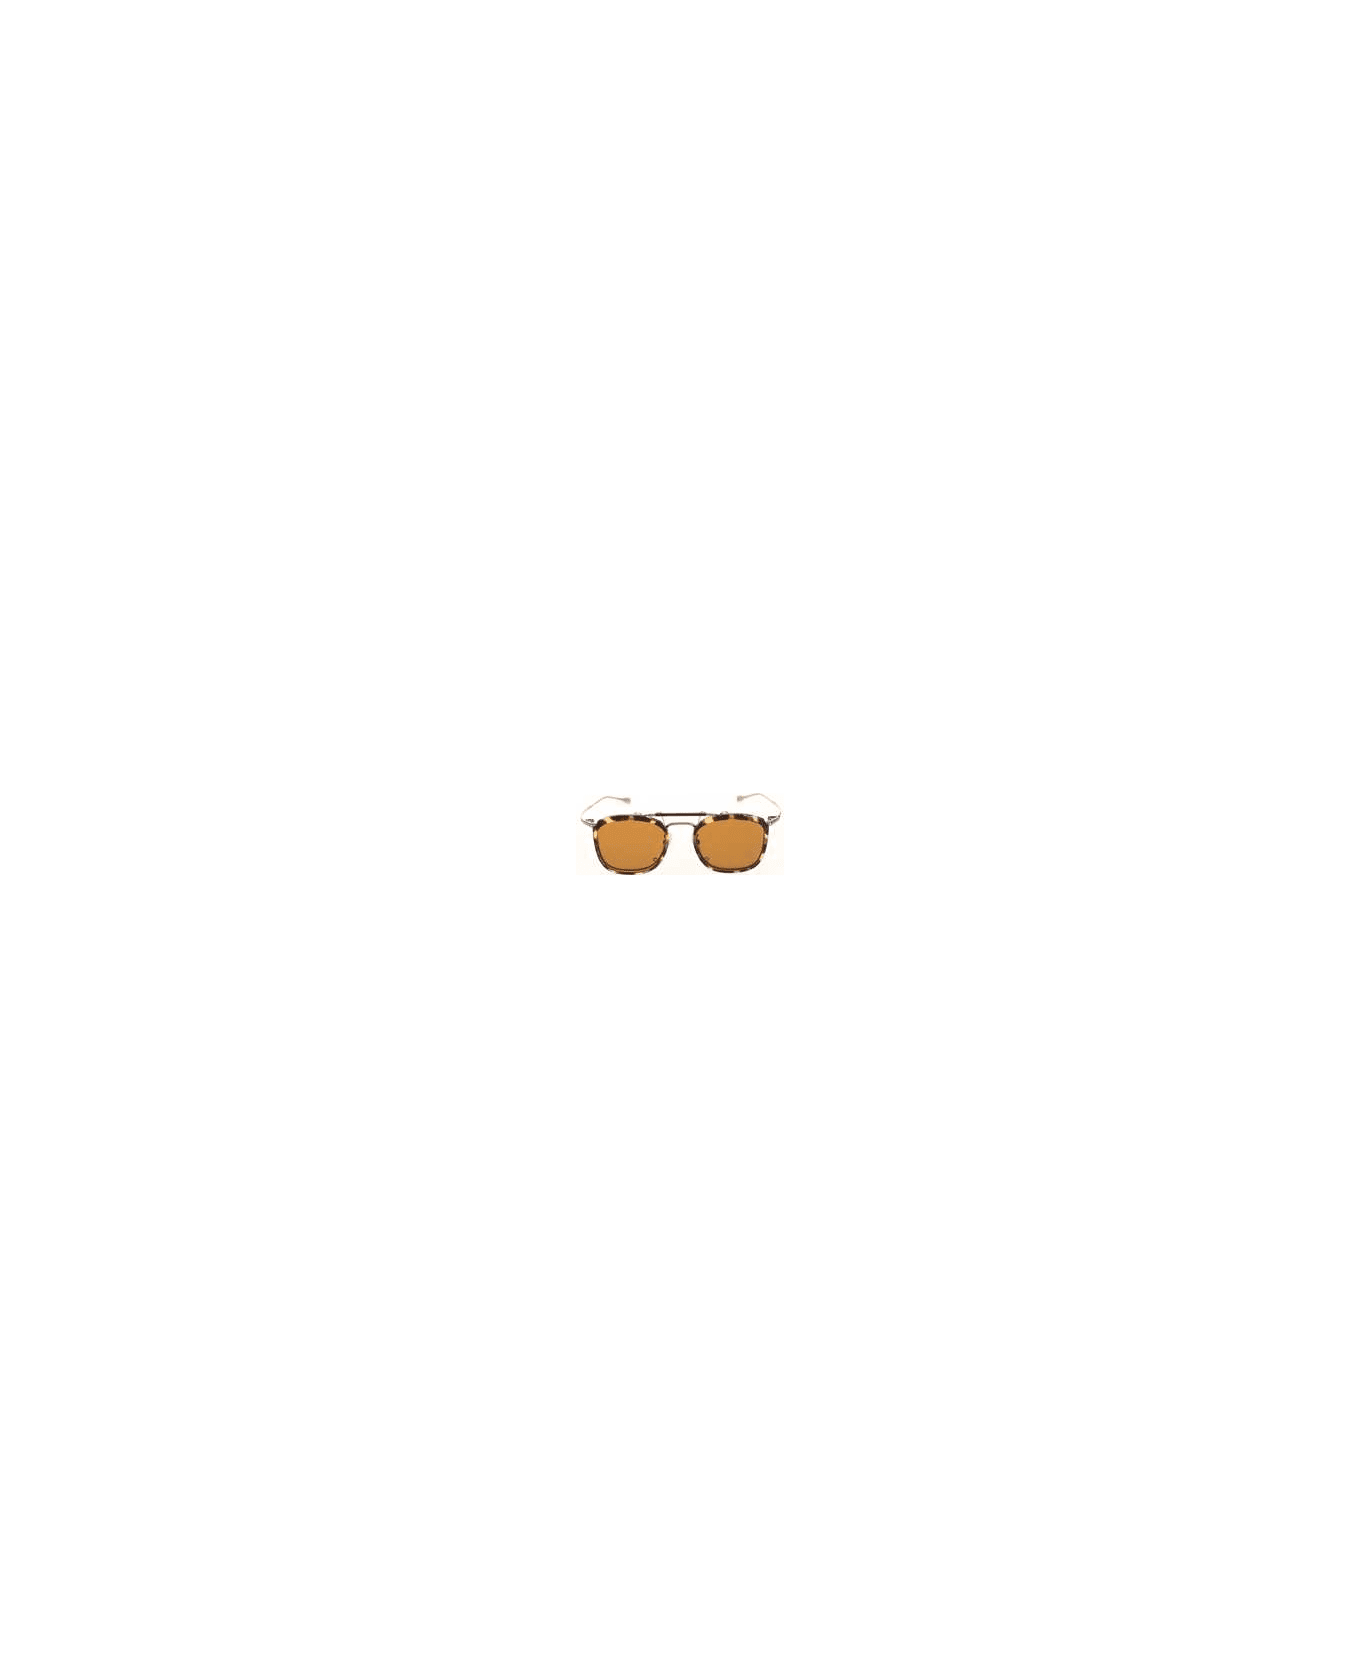 999.9 S/146T + CLIP Sunglasses サングラス